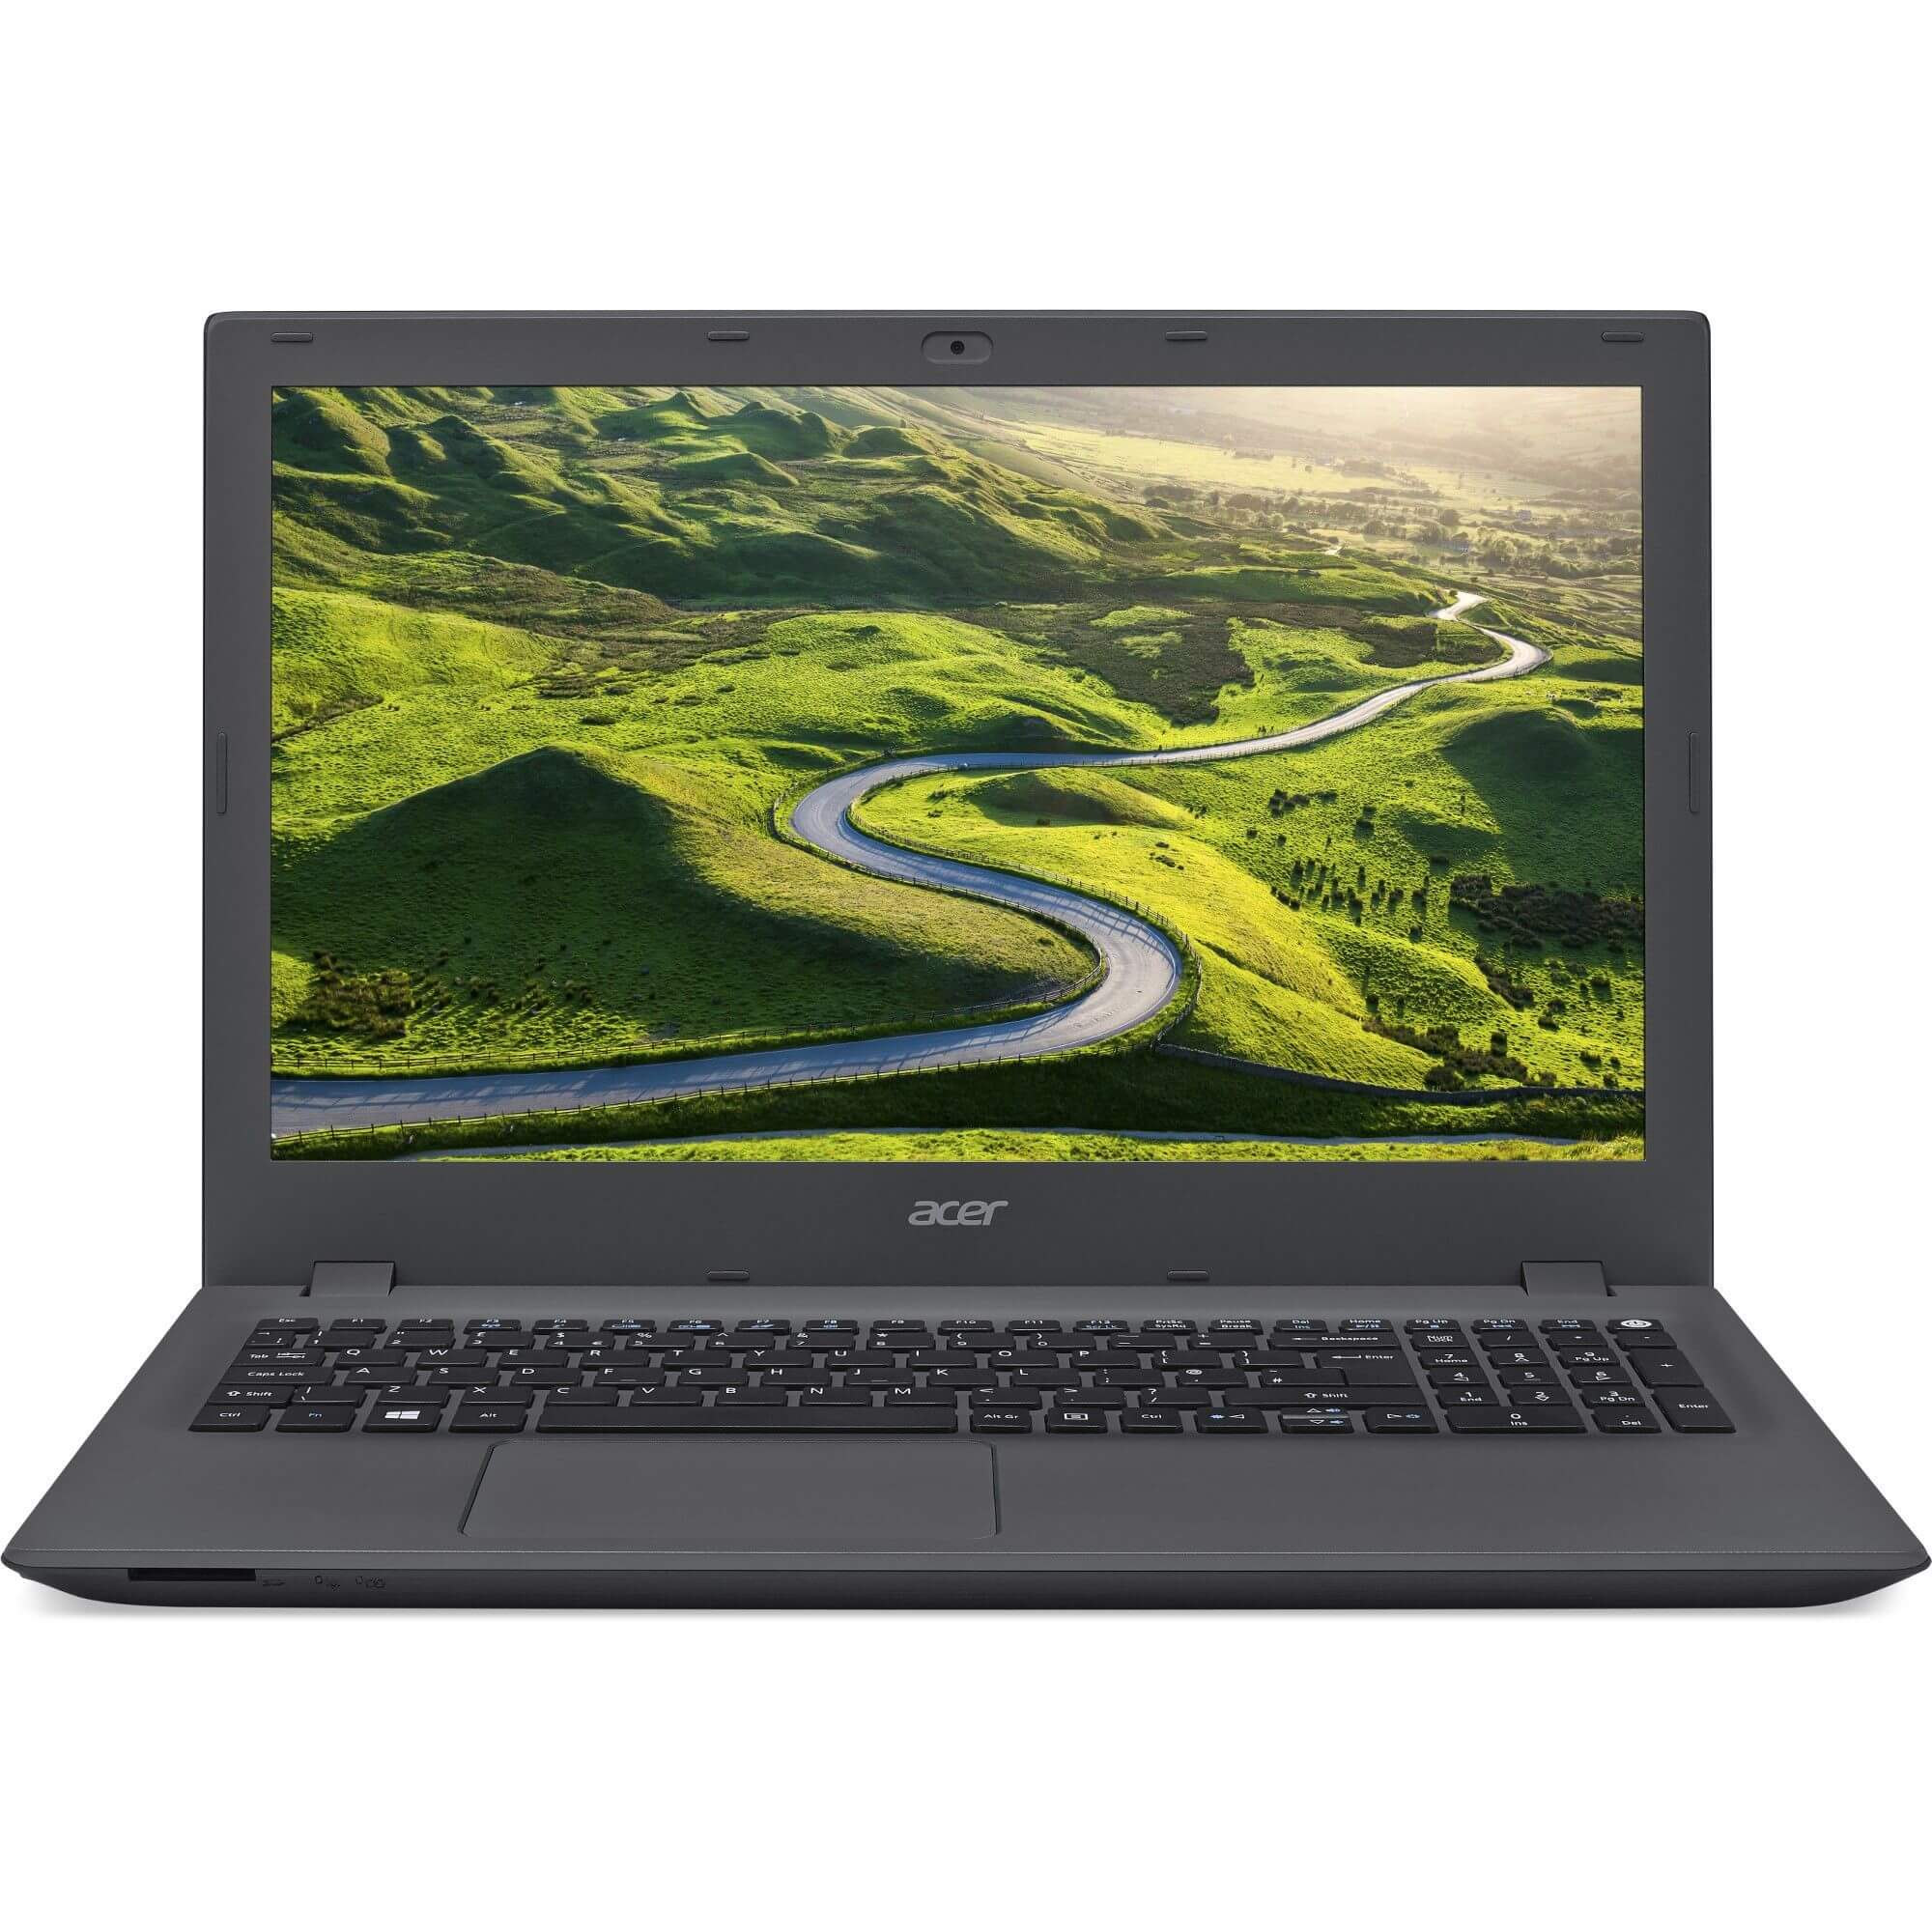  Laptop Acer E5-573G-37U0, Intel Core i3-5005U, 4GB DDR3, SSD 256GB, nVidia GeForce 920M, Linux 